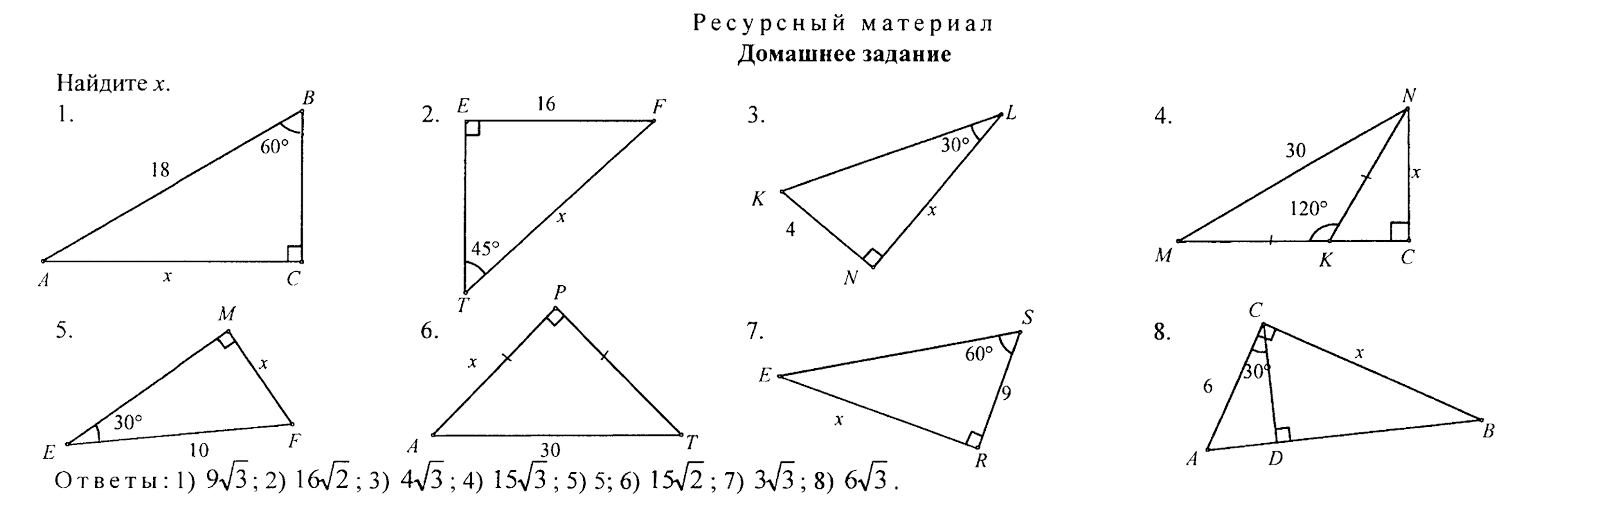 Решение прямоугольных треугольников по готовым чертежам. Задачи на готовых чертежах 8 класс синусы. Соотношение между сторонами в прямоугольном треугольнике 8 класс. Соотношение сторон и углов в прямоугольном треугольнике 8 класс. Соотношение между сторонами и углами прямоугольного треугольника.